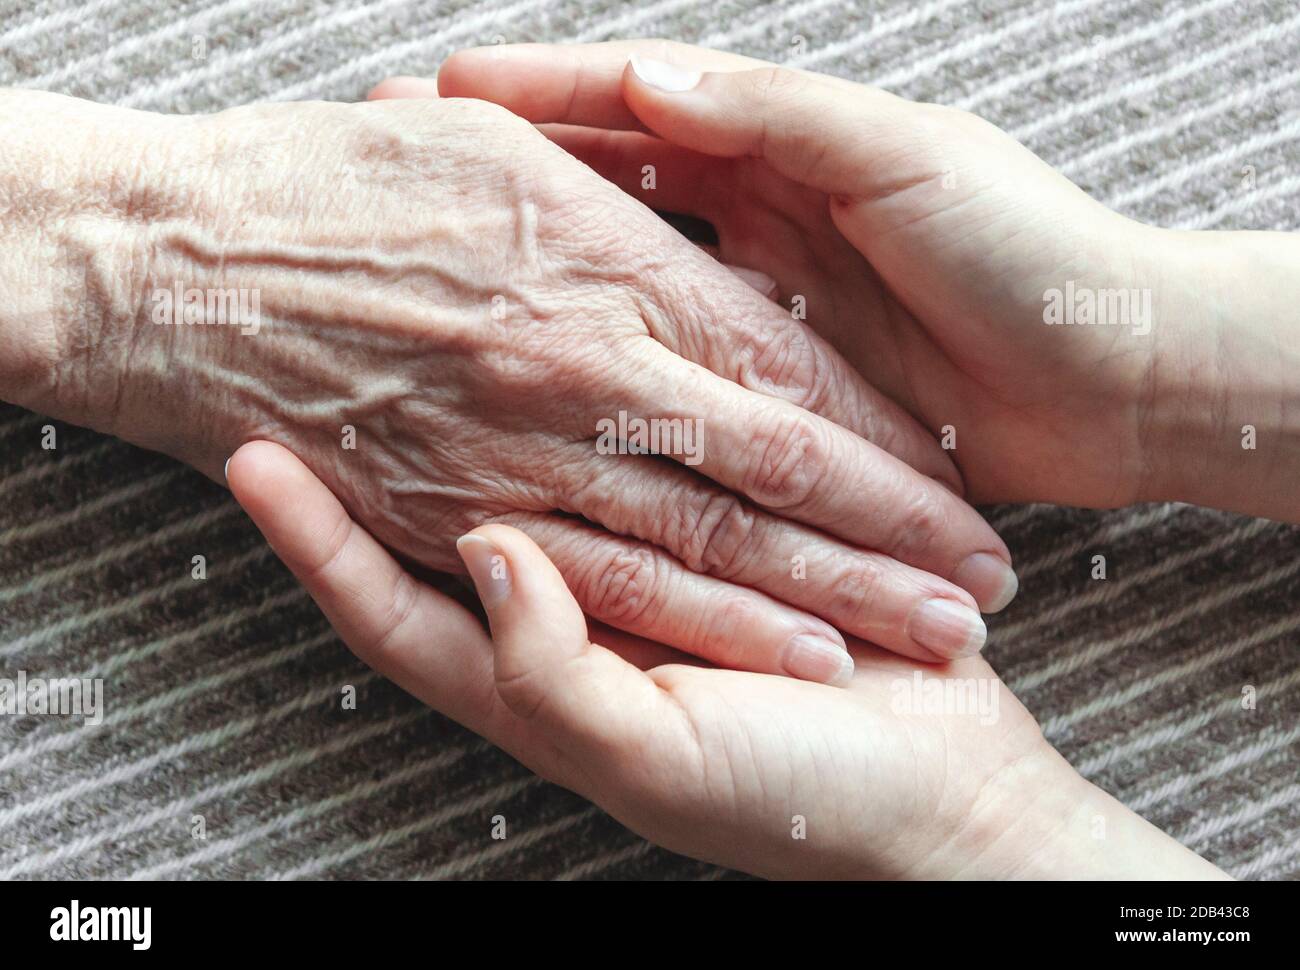 Le mani giovani che tengono la vecchia palma della donna, immagine closeup Foto Stock